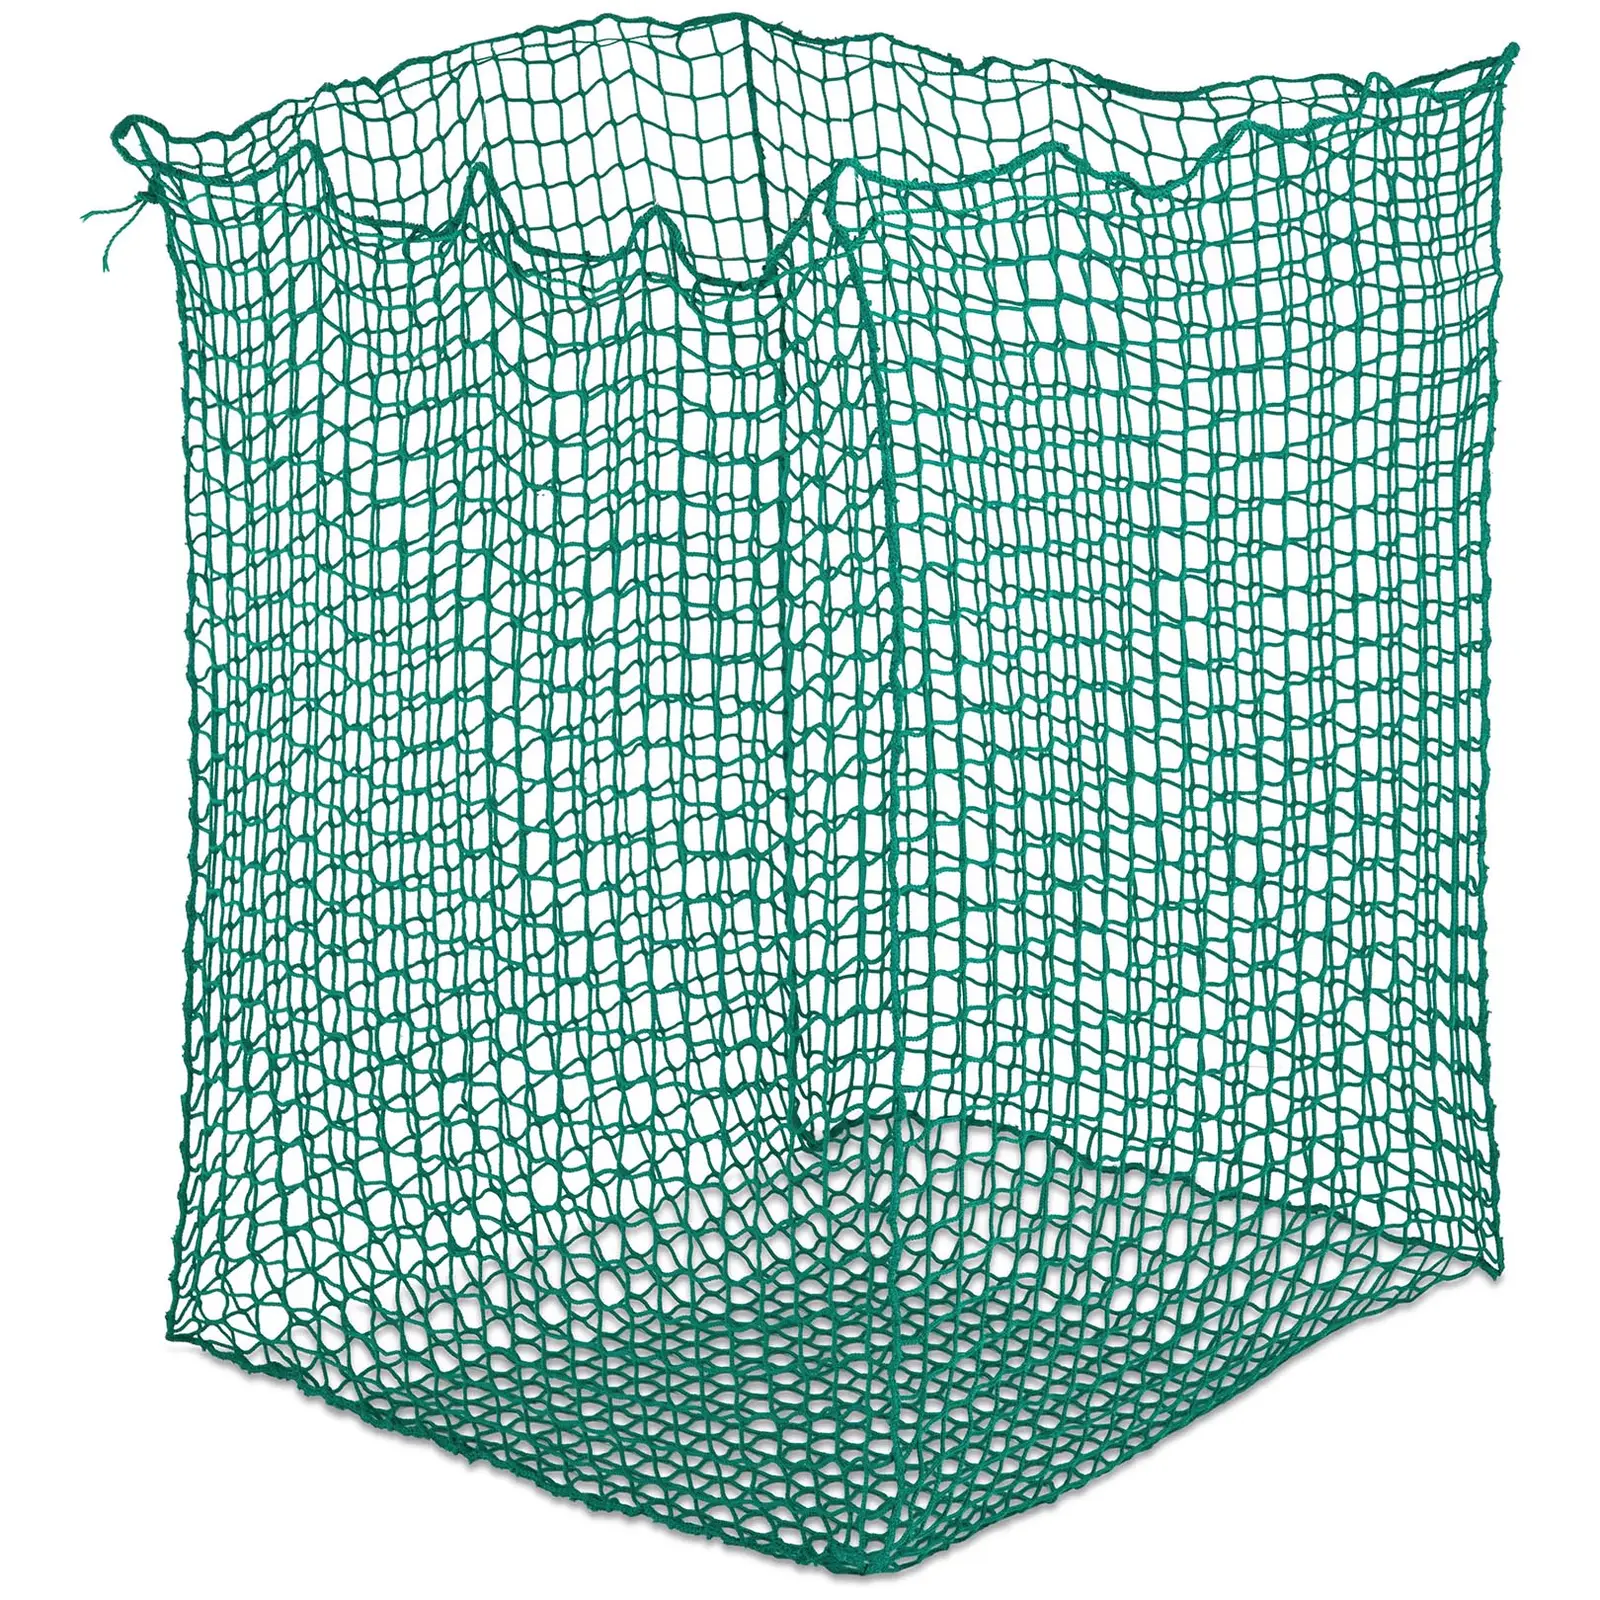 Sieťka na seno - na okrúhle balíky - 1400 x 1400 x 1600 mm - veľkosť oka: 45 mm - zelená